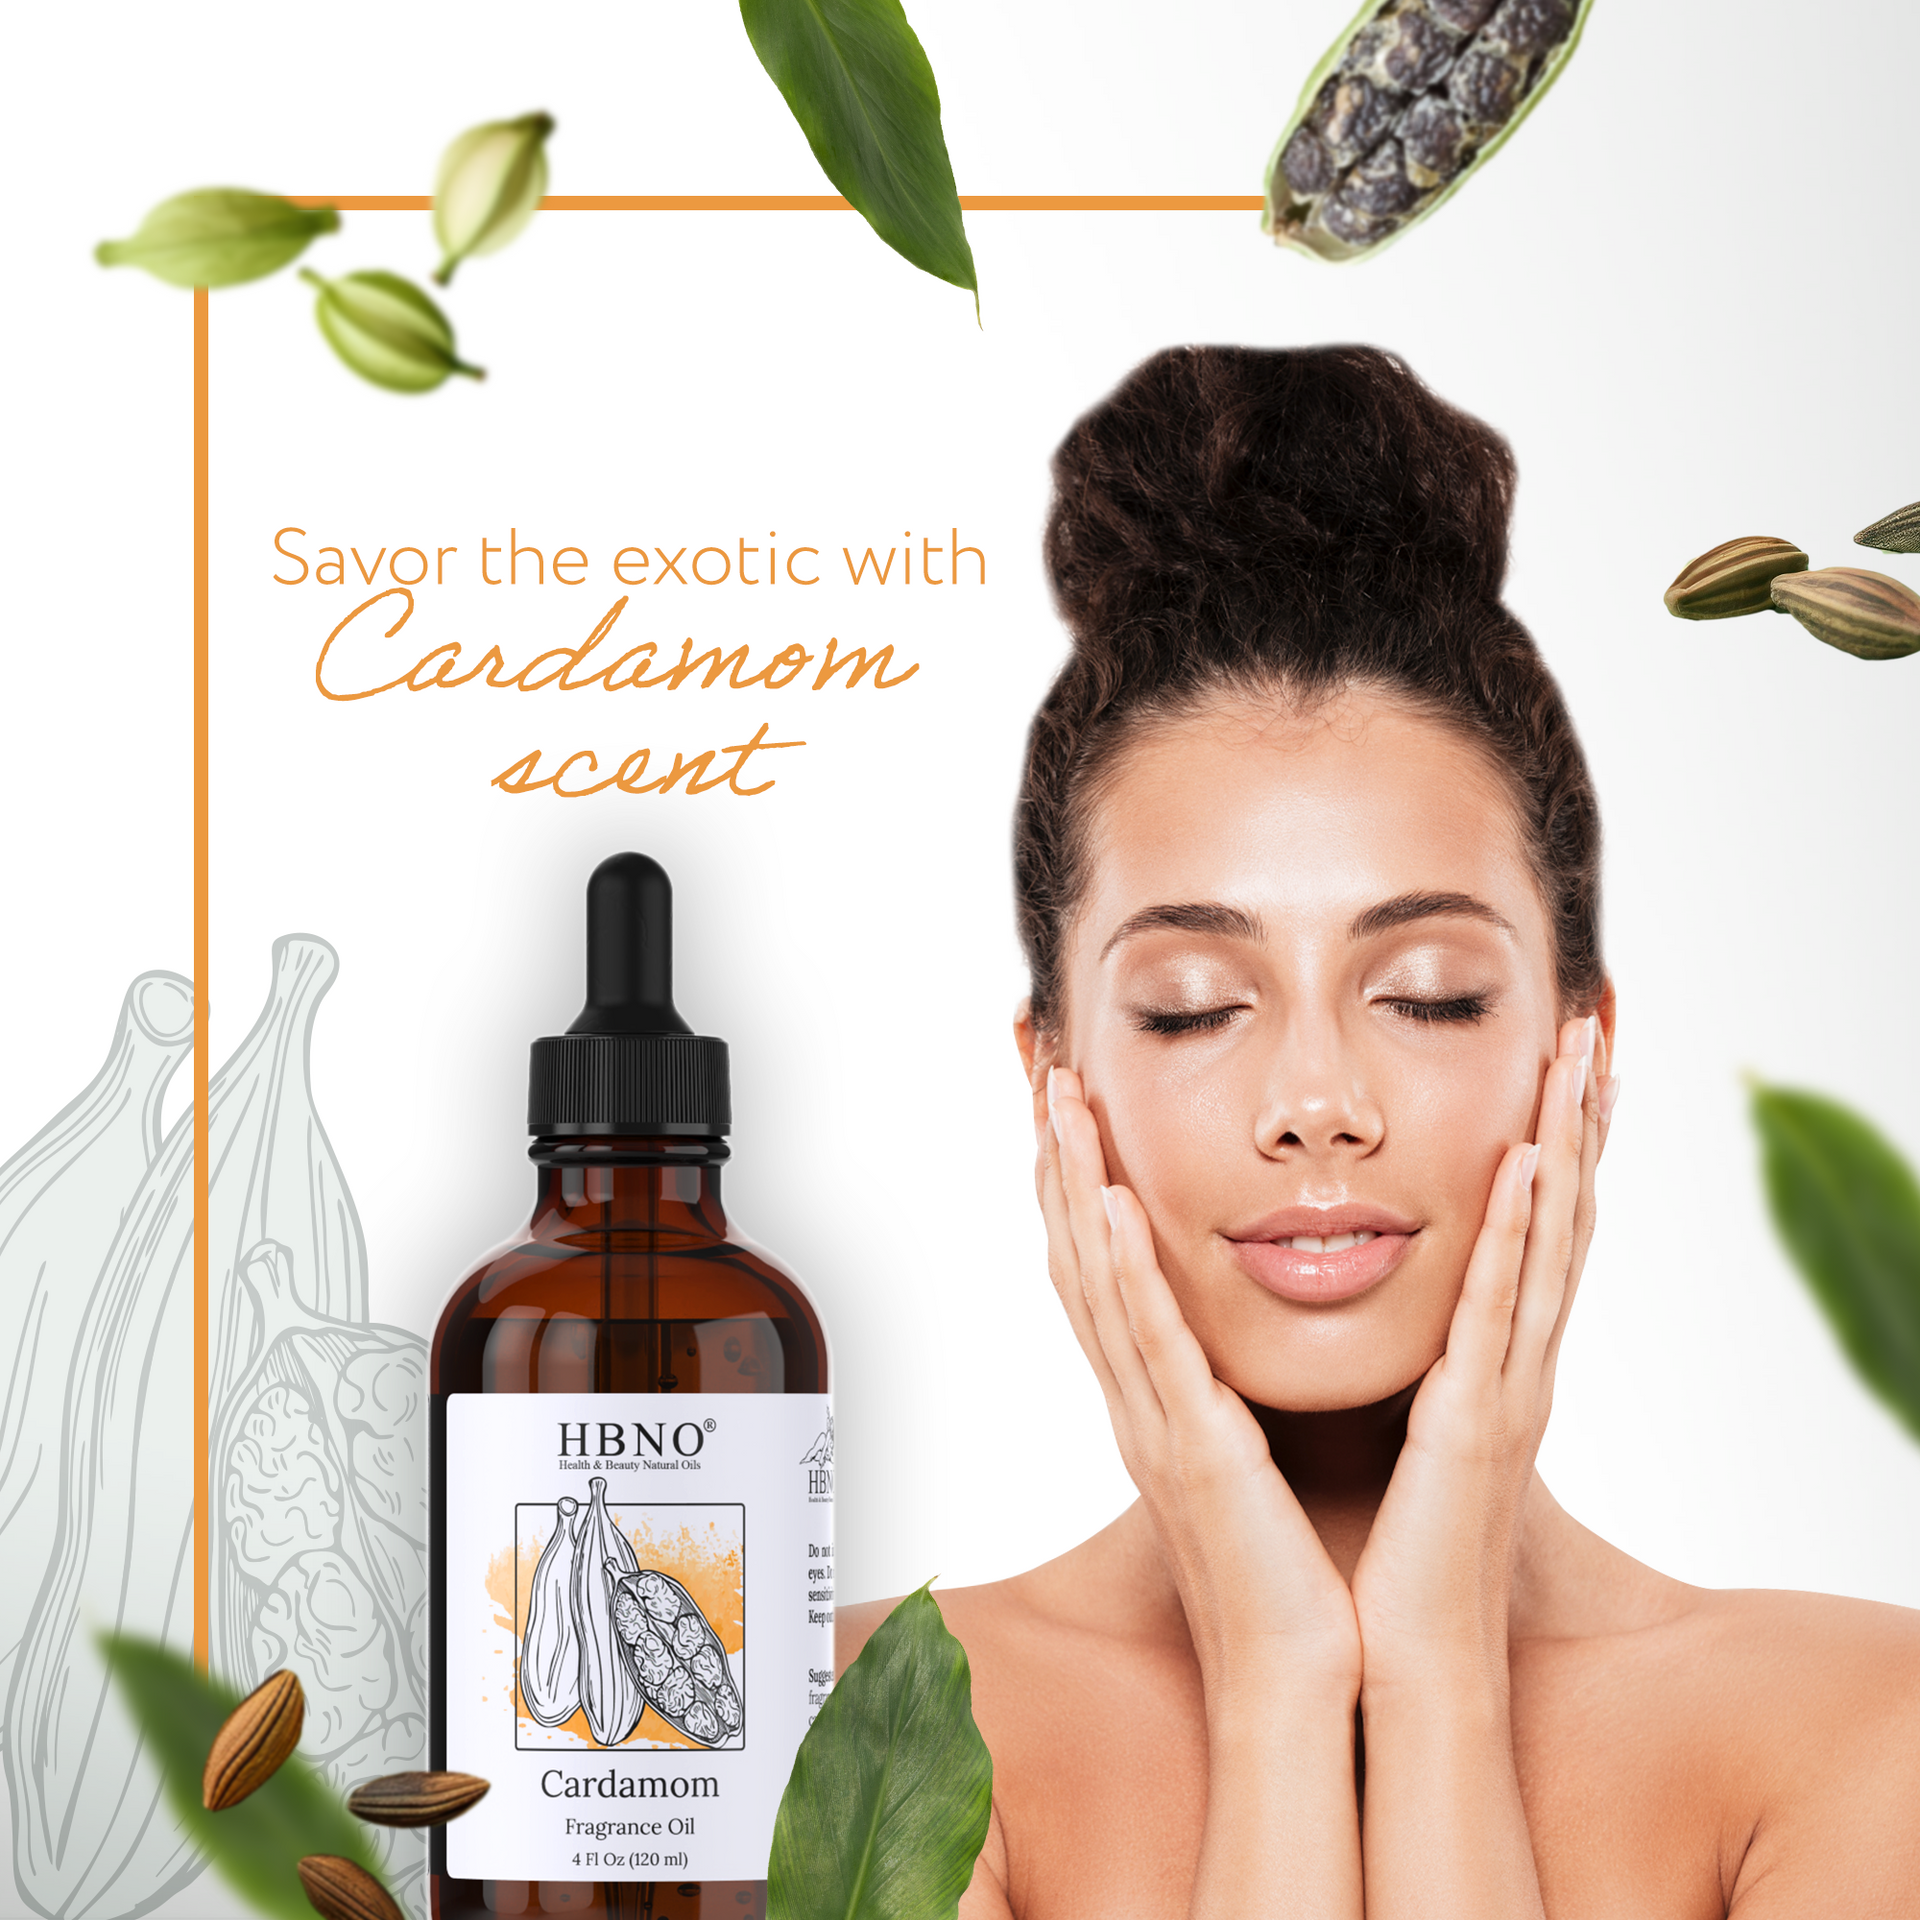 Cardamom Fragrance